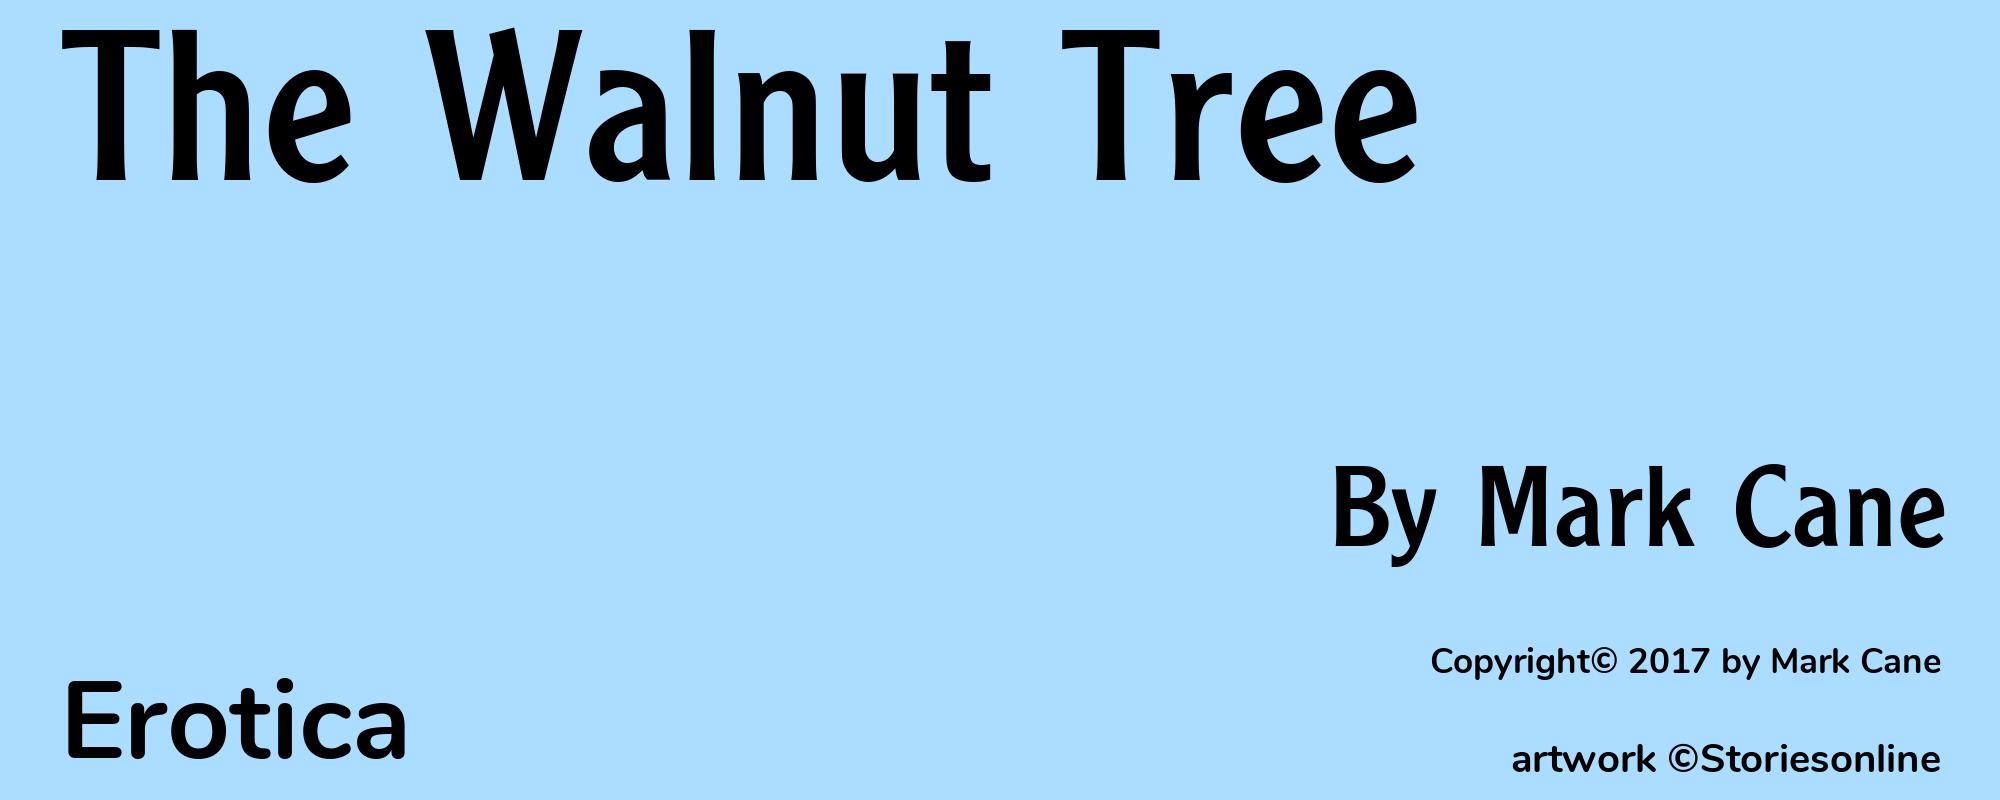 The Walnut Tree - Cover